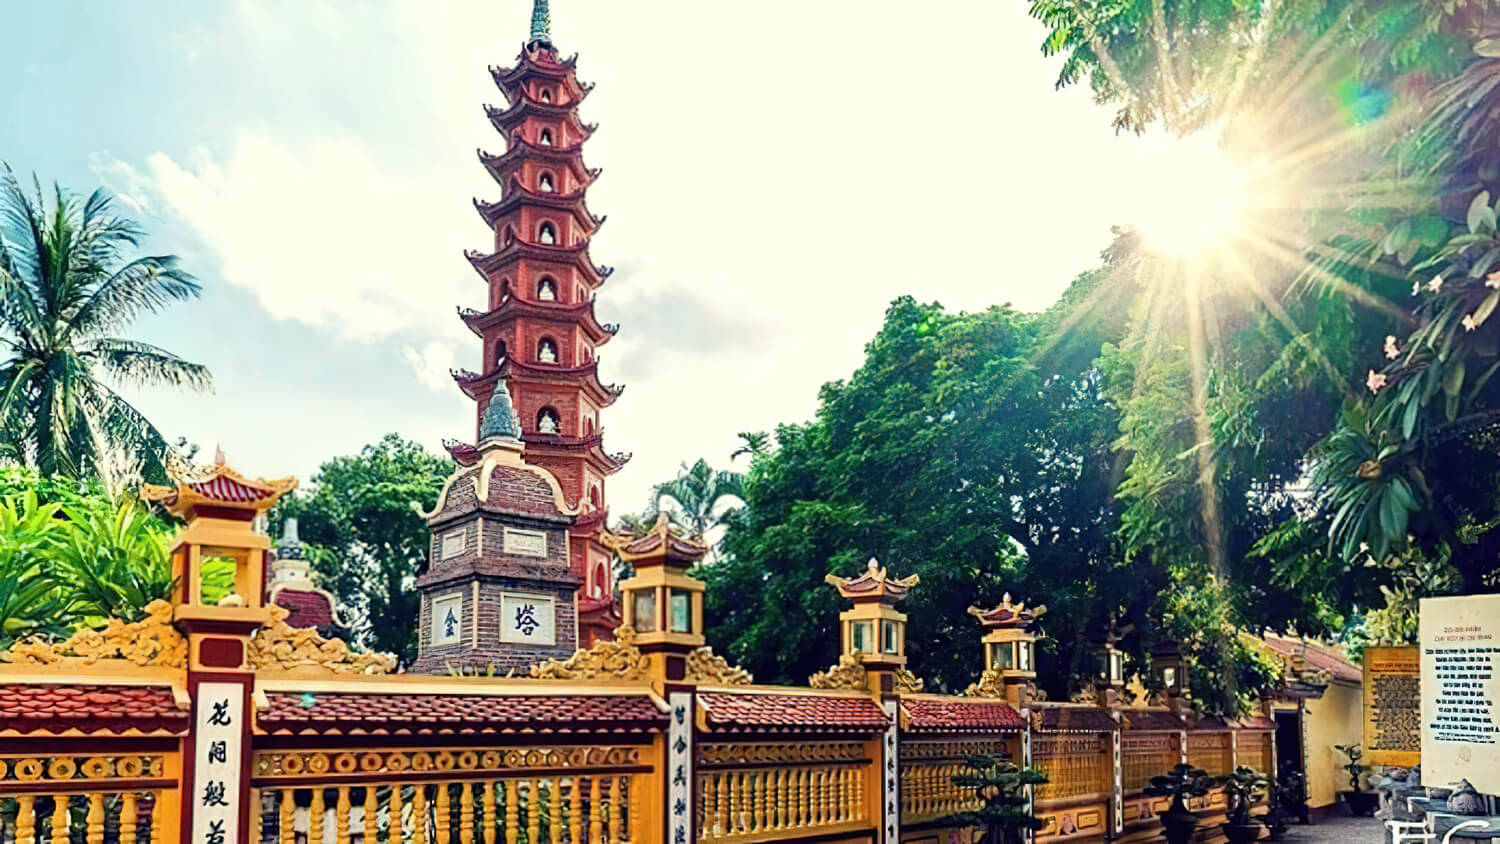 Nguyên tắc trong thiết kế chùa Việt cần nắm bắt